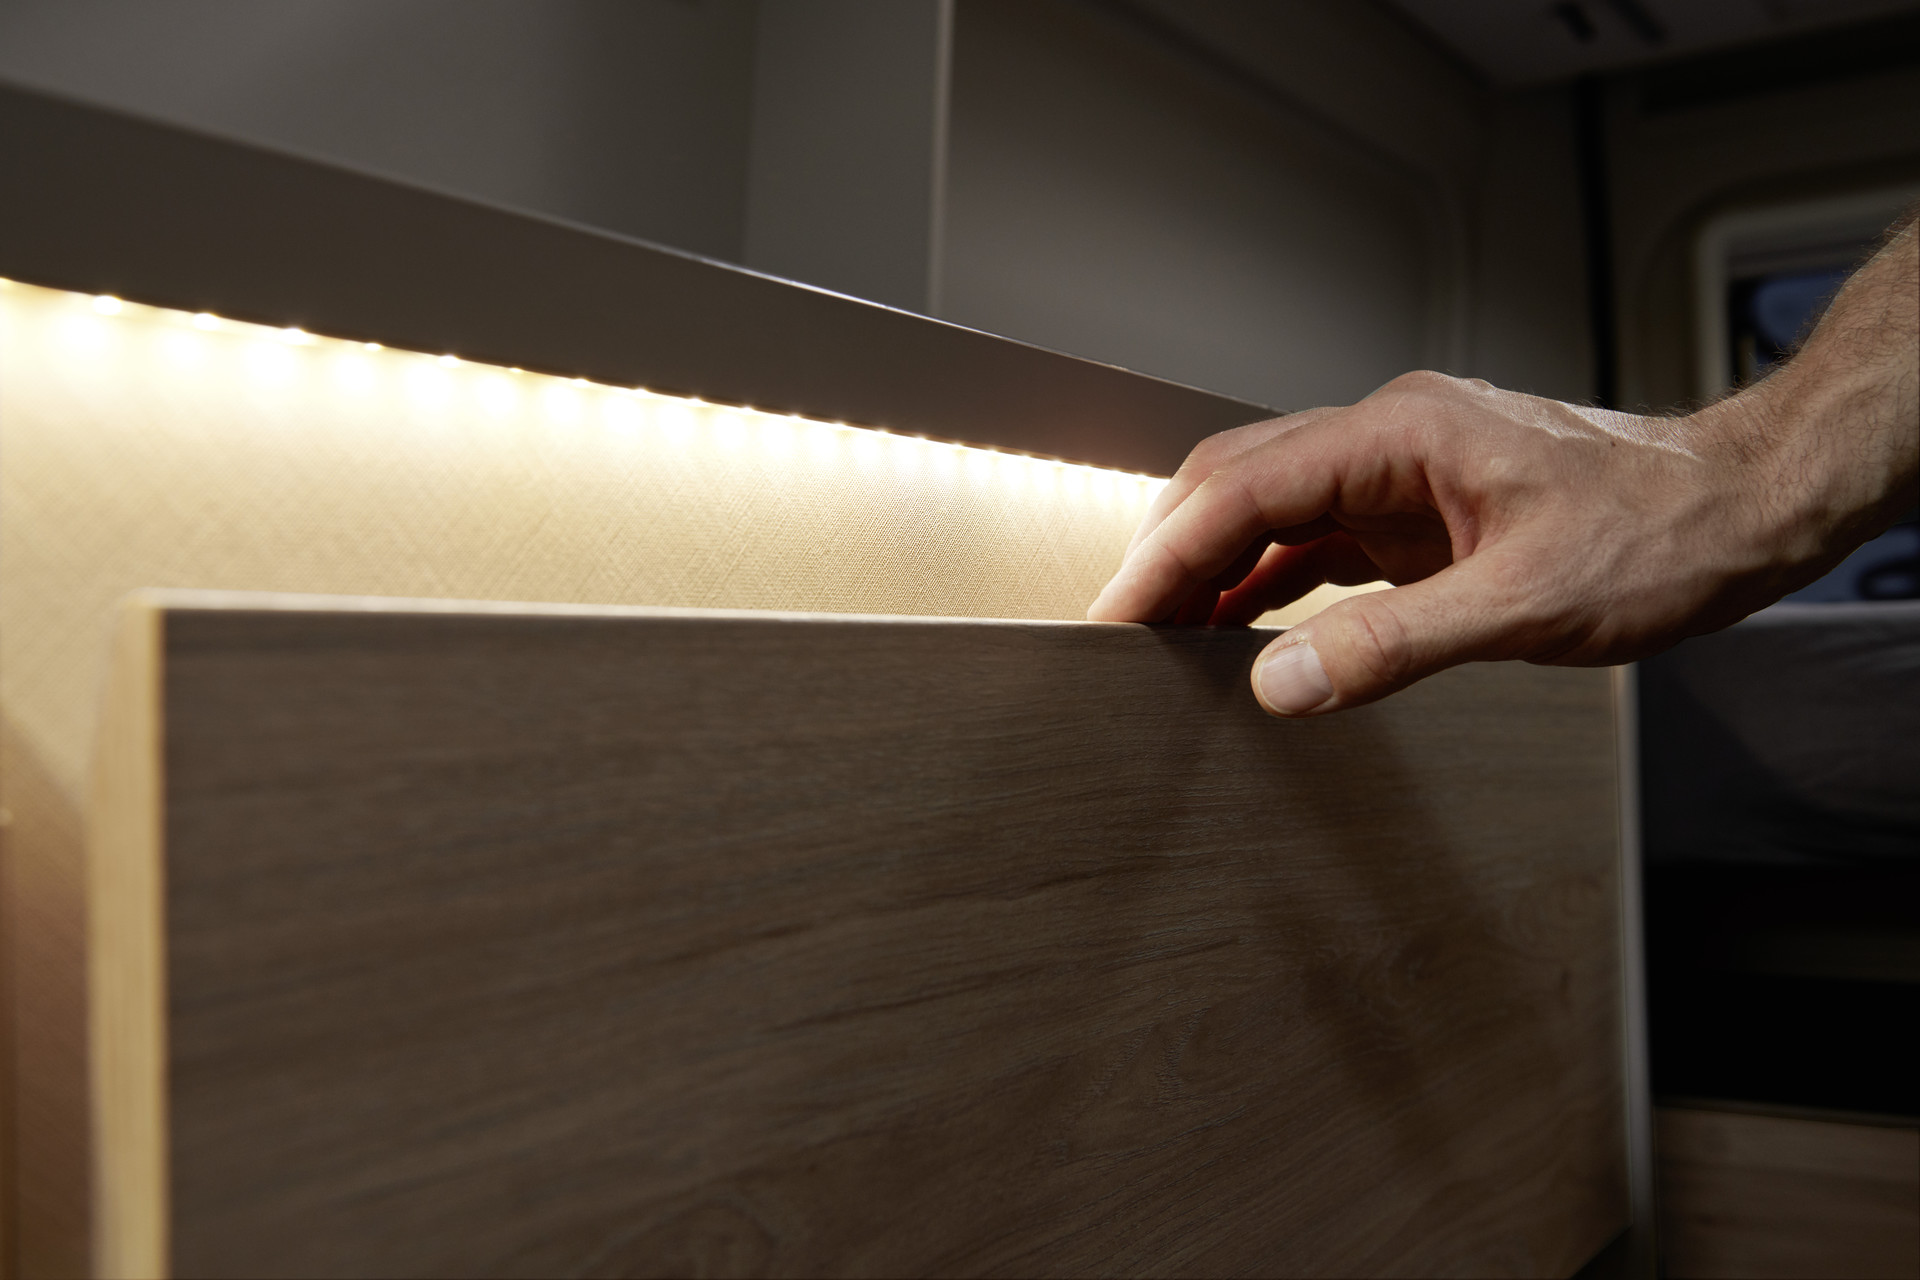 L‘illuminazione indiretta fa luce nel cassetto e allo stesso tempo crea un’atmosfera piacevole.